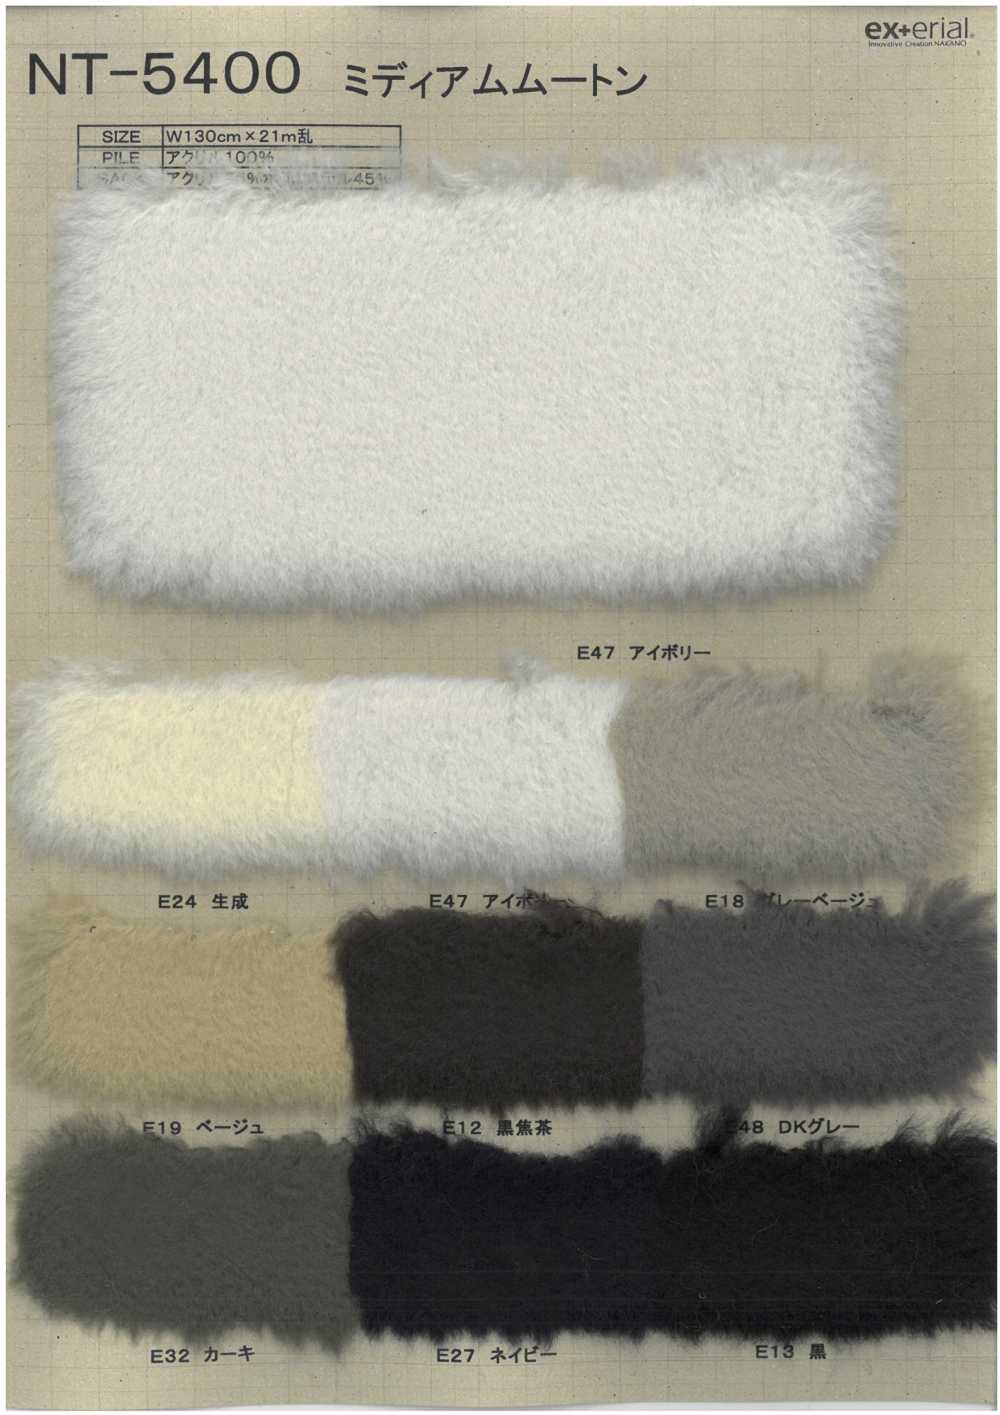 NT-5400 Fourrure Artisanale [Shearling Moyen][Fabrication De Textile] Industrie Du Jersey Nakano